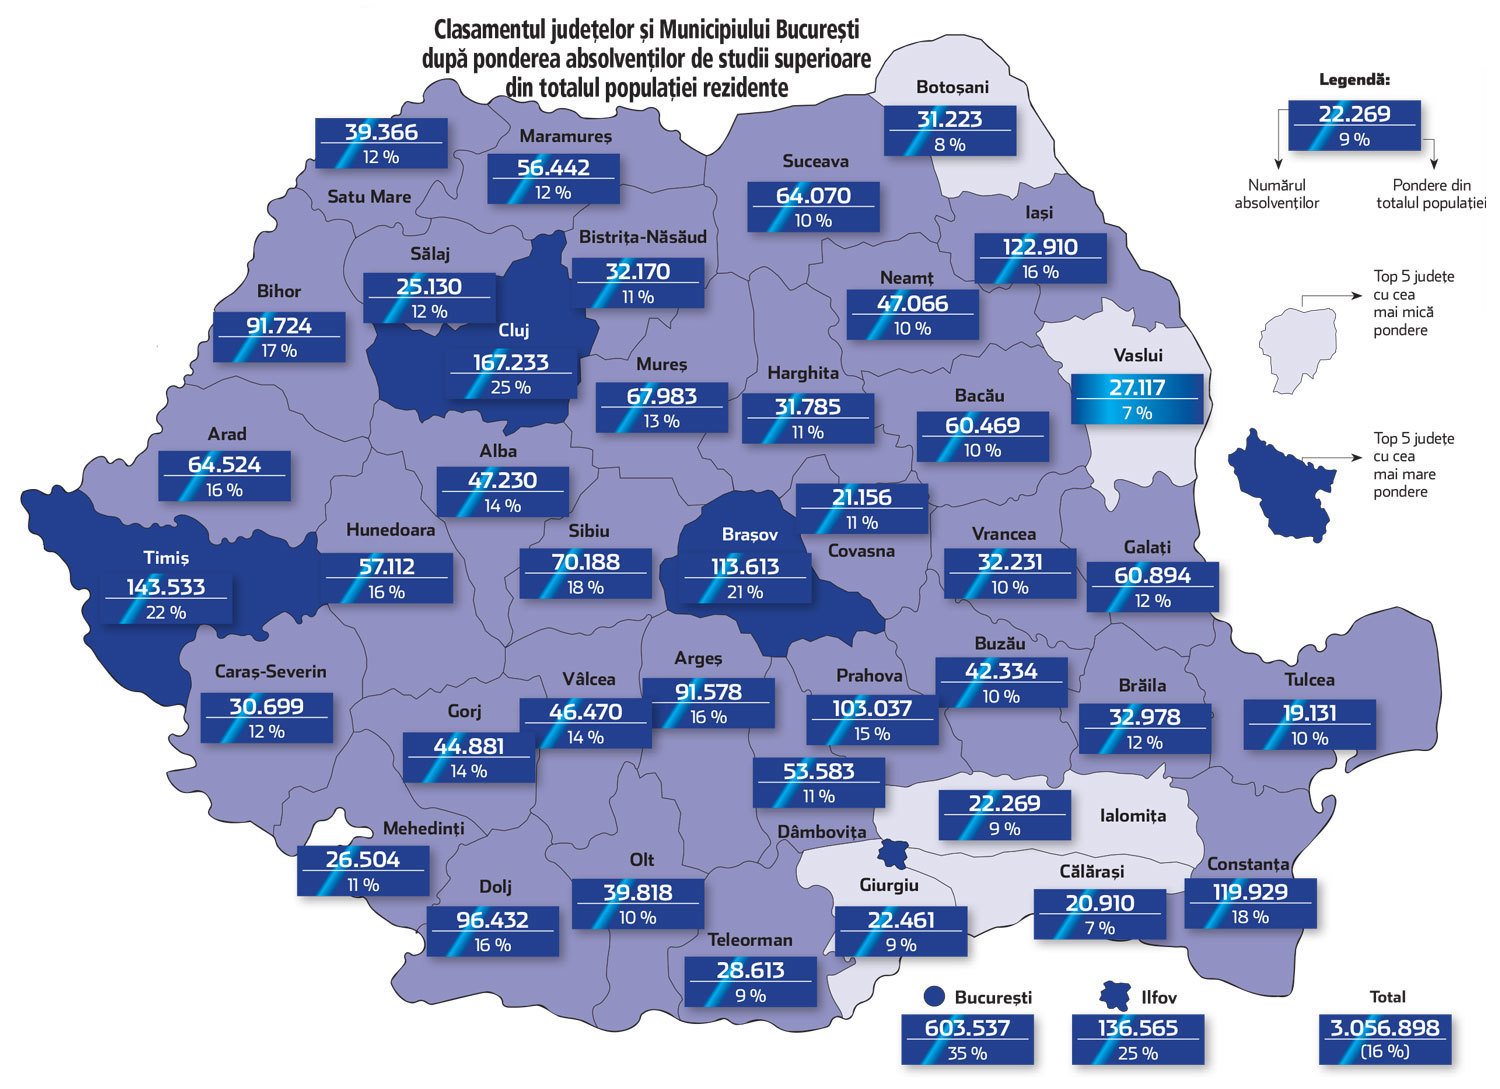 Doar 16% dintre români sunt absolvenţi de studii superioare. Bucureşti – Ilfov, Cluj şi Timiş au cele mai mari ponderi de absolvenţi. Din totalul populaţiei rezidente, 43,5% au nivel mediu de educaţie, 40,5% au un nivel scăzut, iar 16% sunt absolvenţi de studii superioare